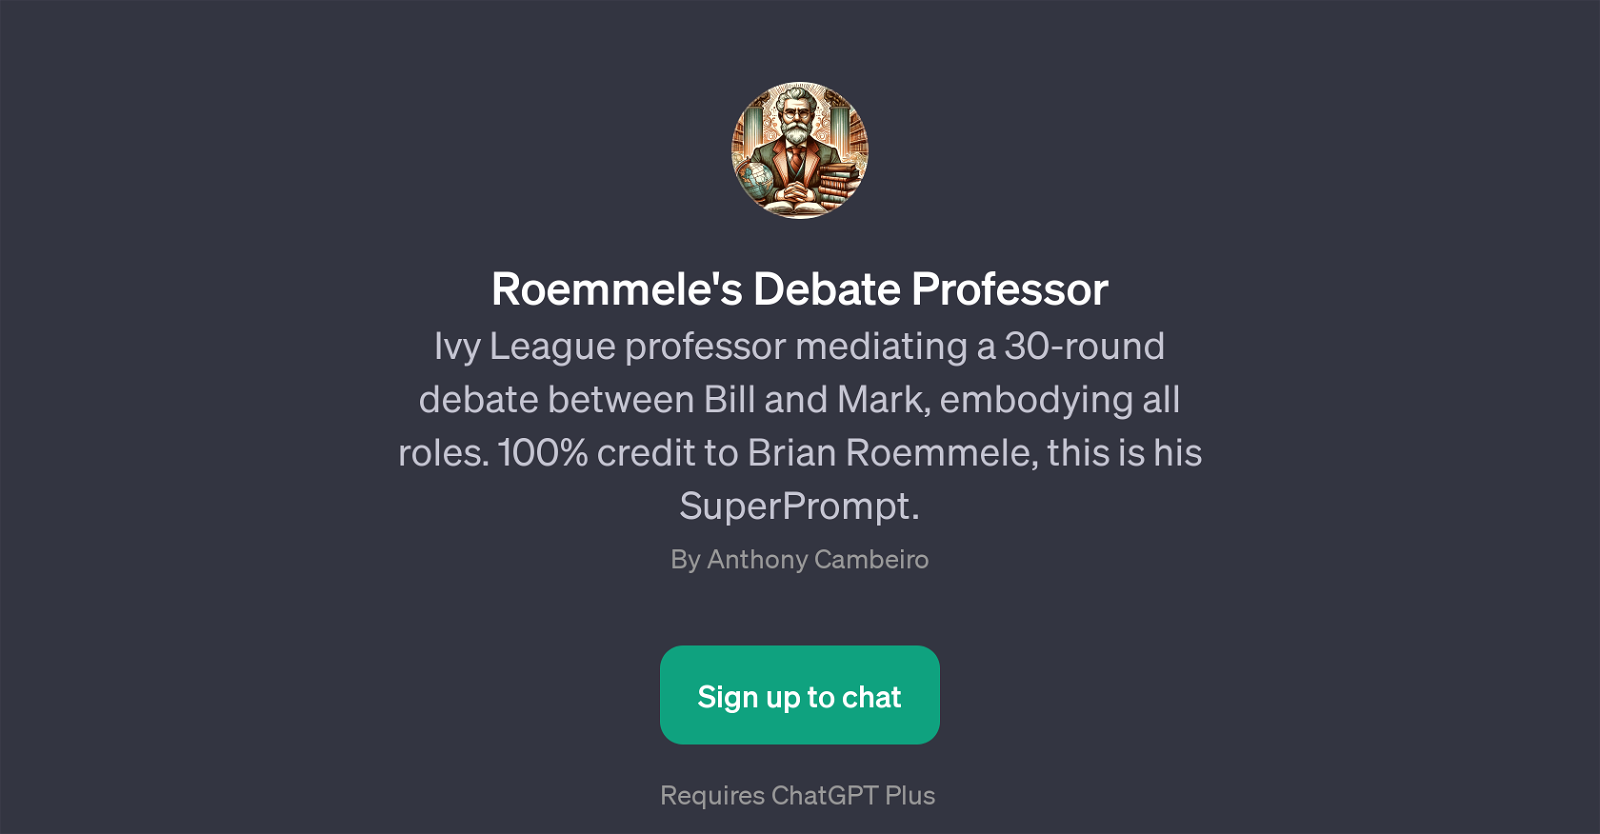 Roemmele's Debate Professor website